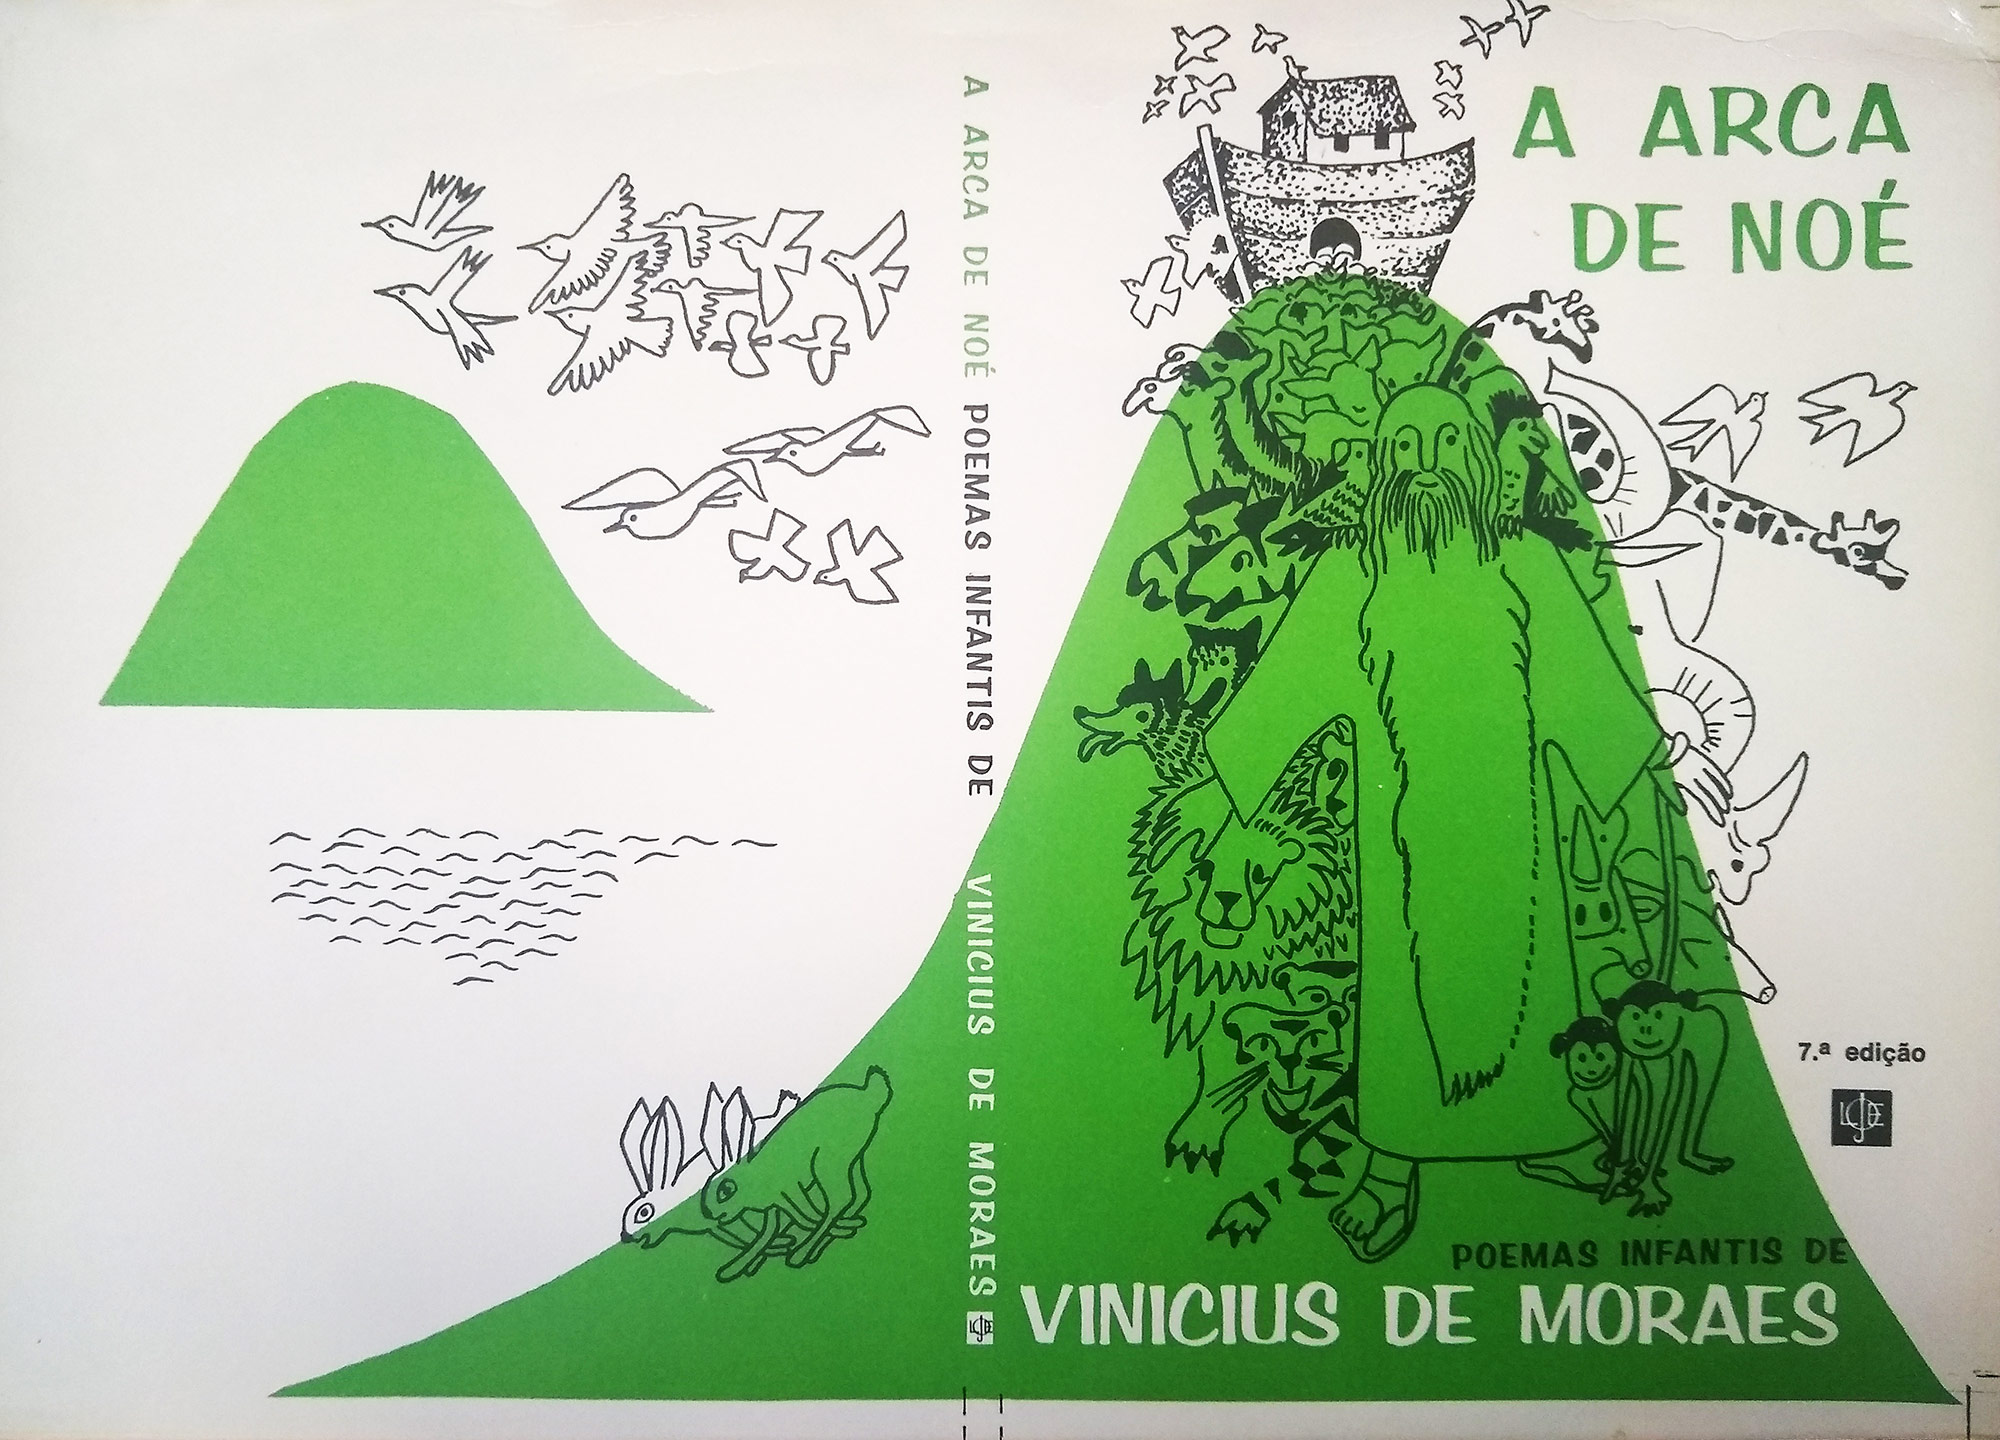 Capa do livro Arca de Noé, de Vinicius de Moraes.